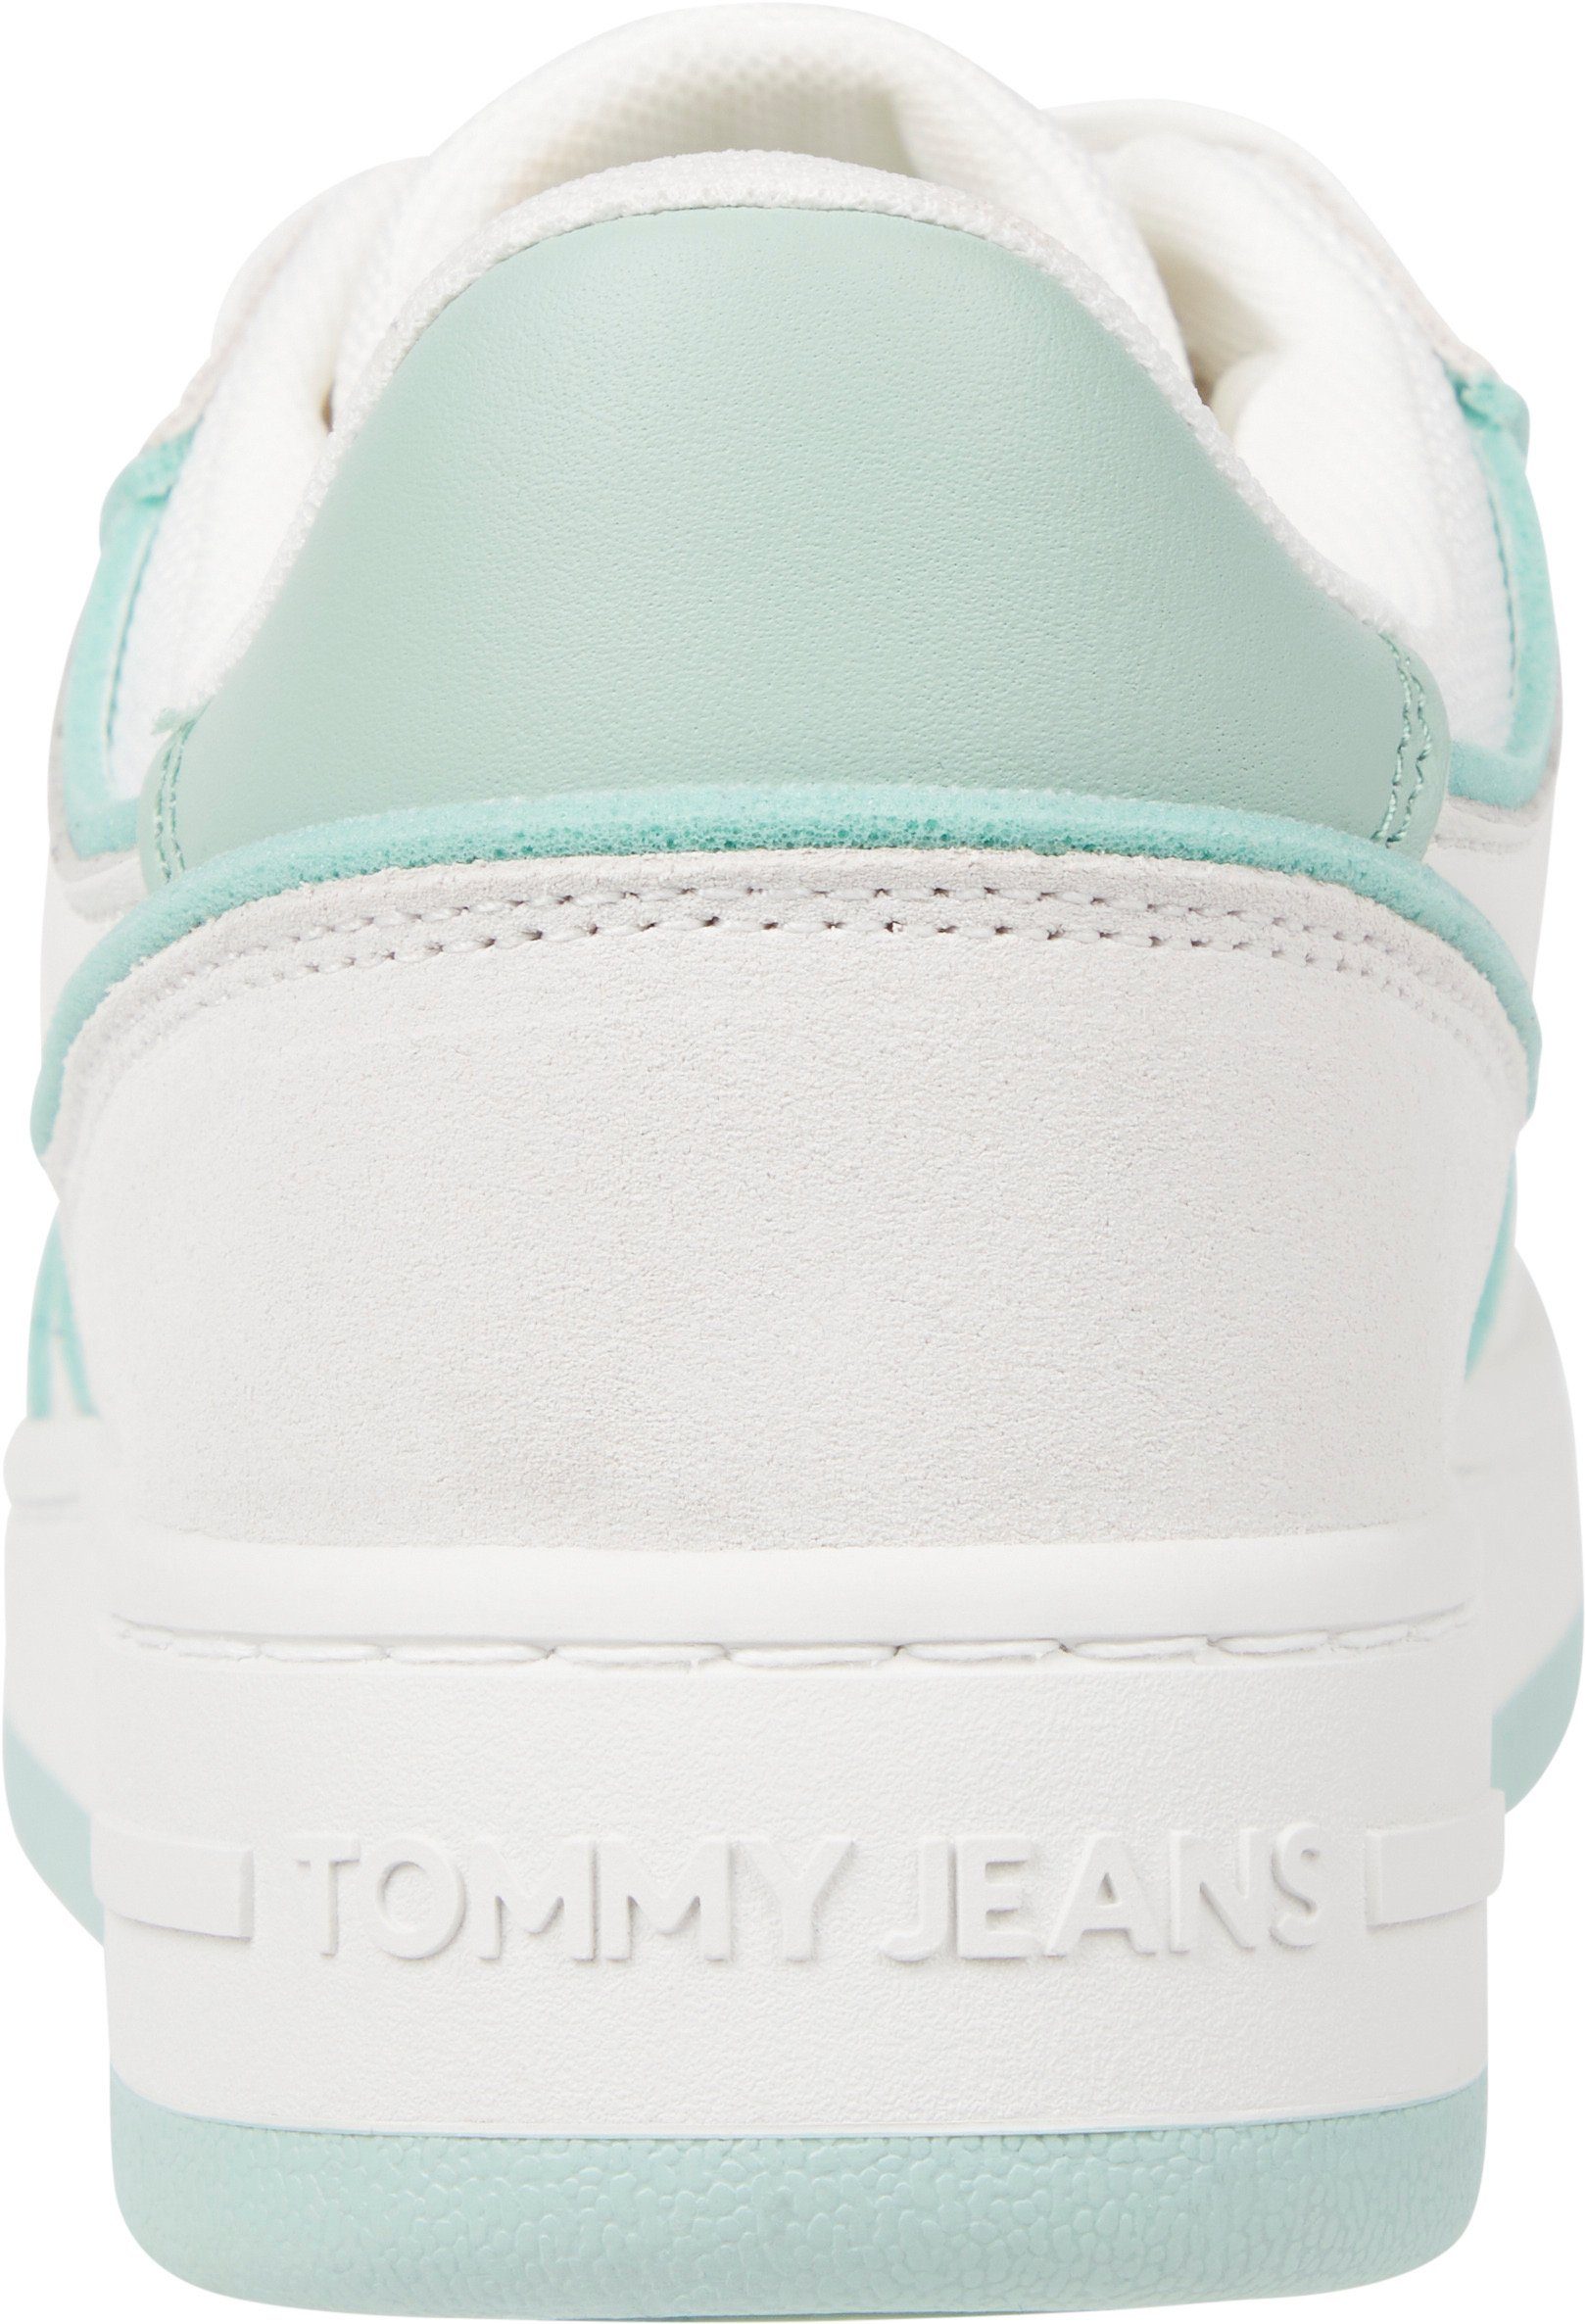 Tommy Jeans TJW RETRO BASKET mit Pastell-Besatz EDGE kontrastfarbenem FOAM Keilsneaker ecru-hellgrün